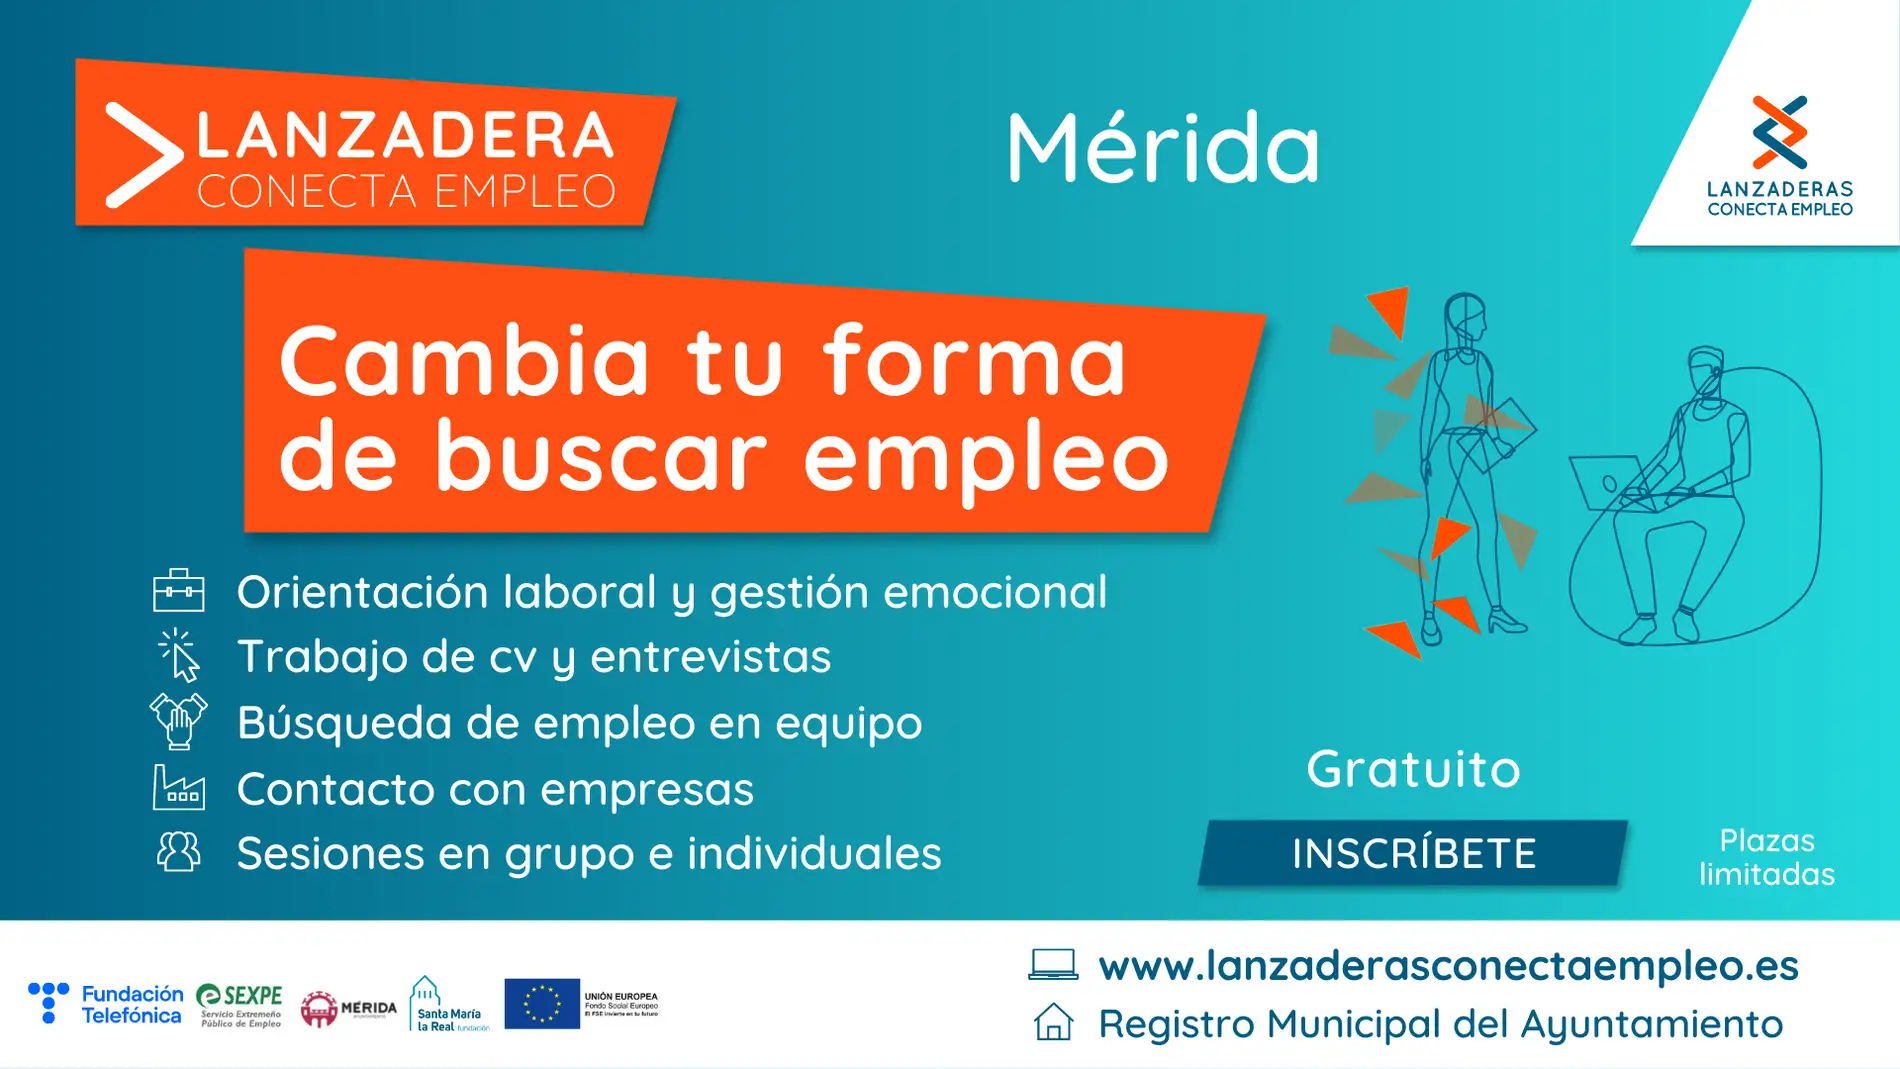 Abierta la inscripción para una nueva Lanzadera Conecta Empleo en Mérida